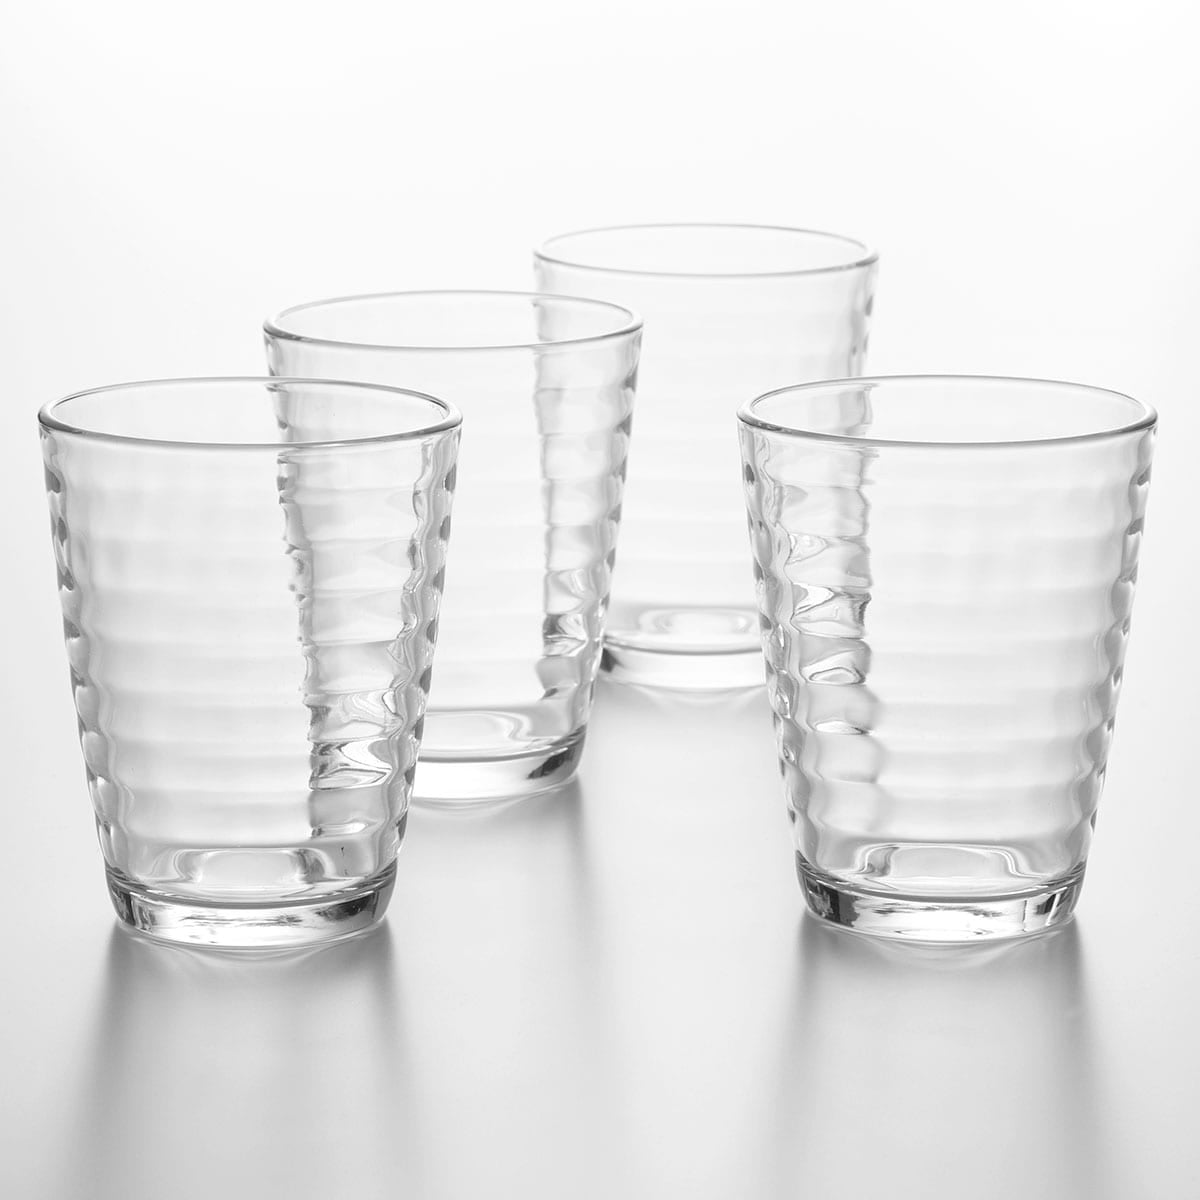 【家居】玻璃杯4件套 350ML